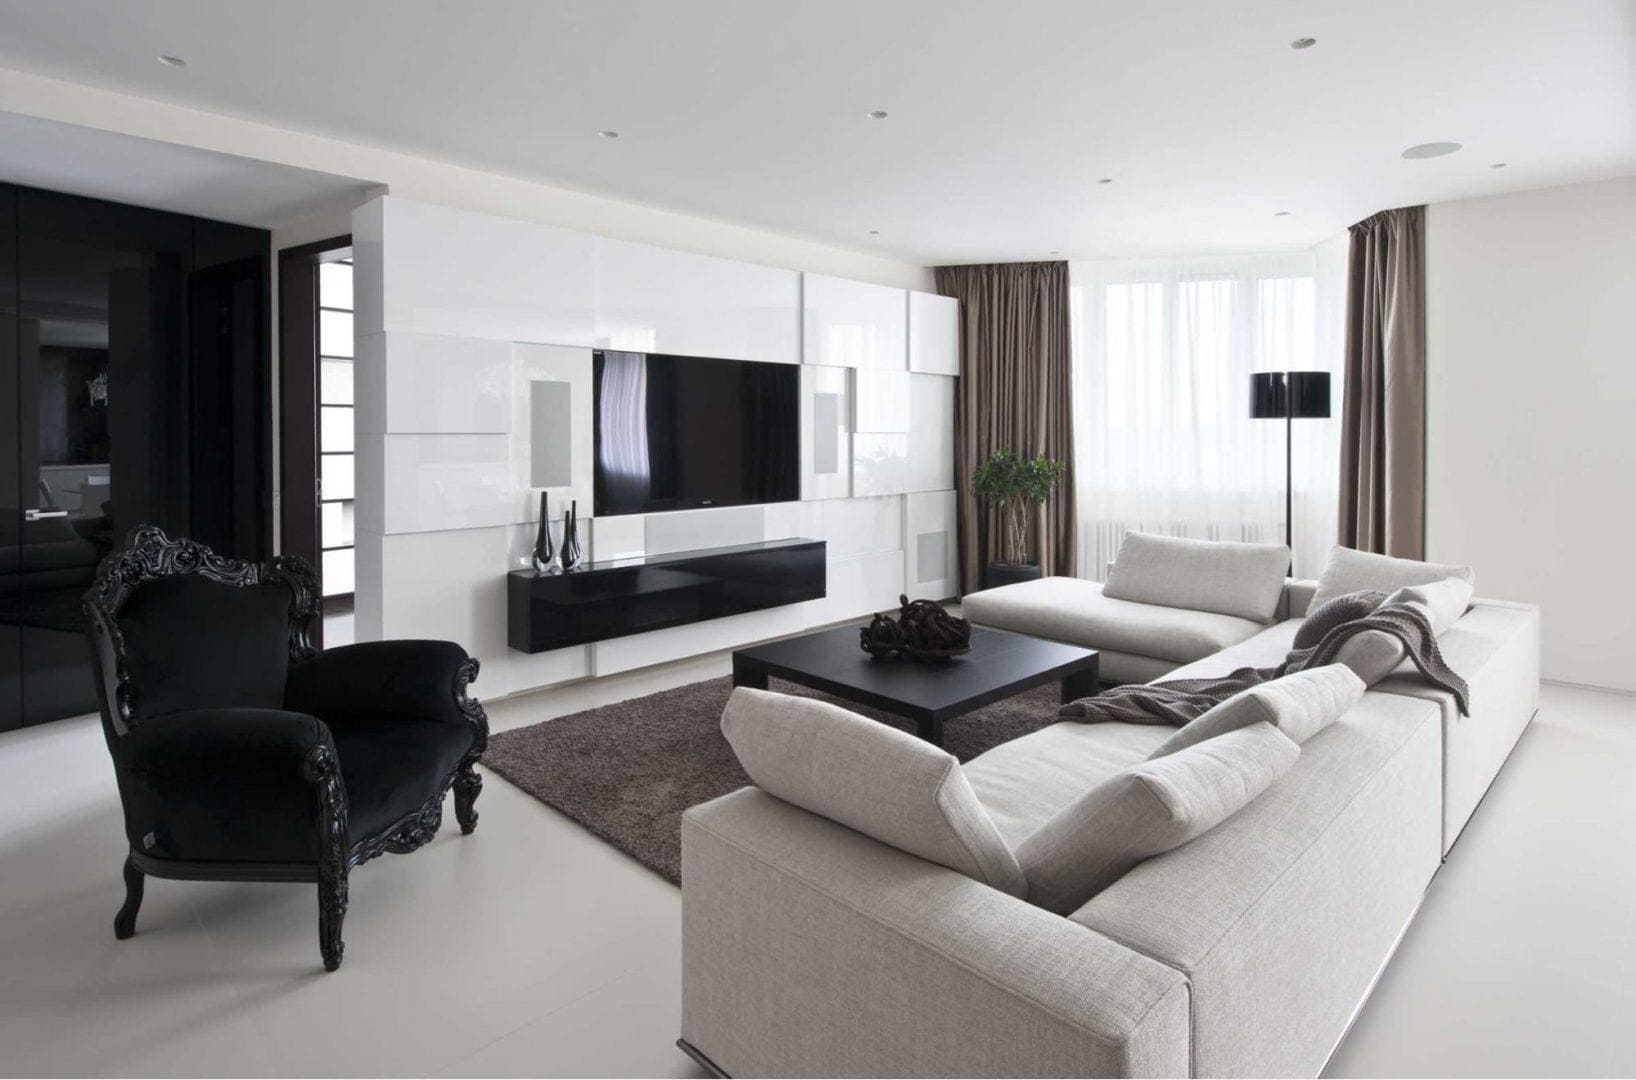 Современный дизайн интерьера квартиры в серых оттенках